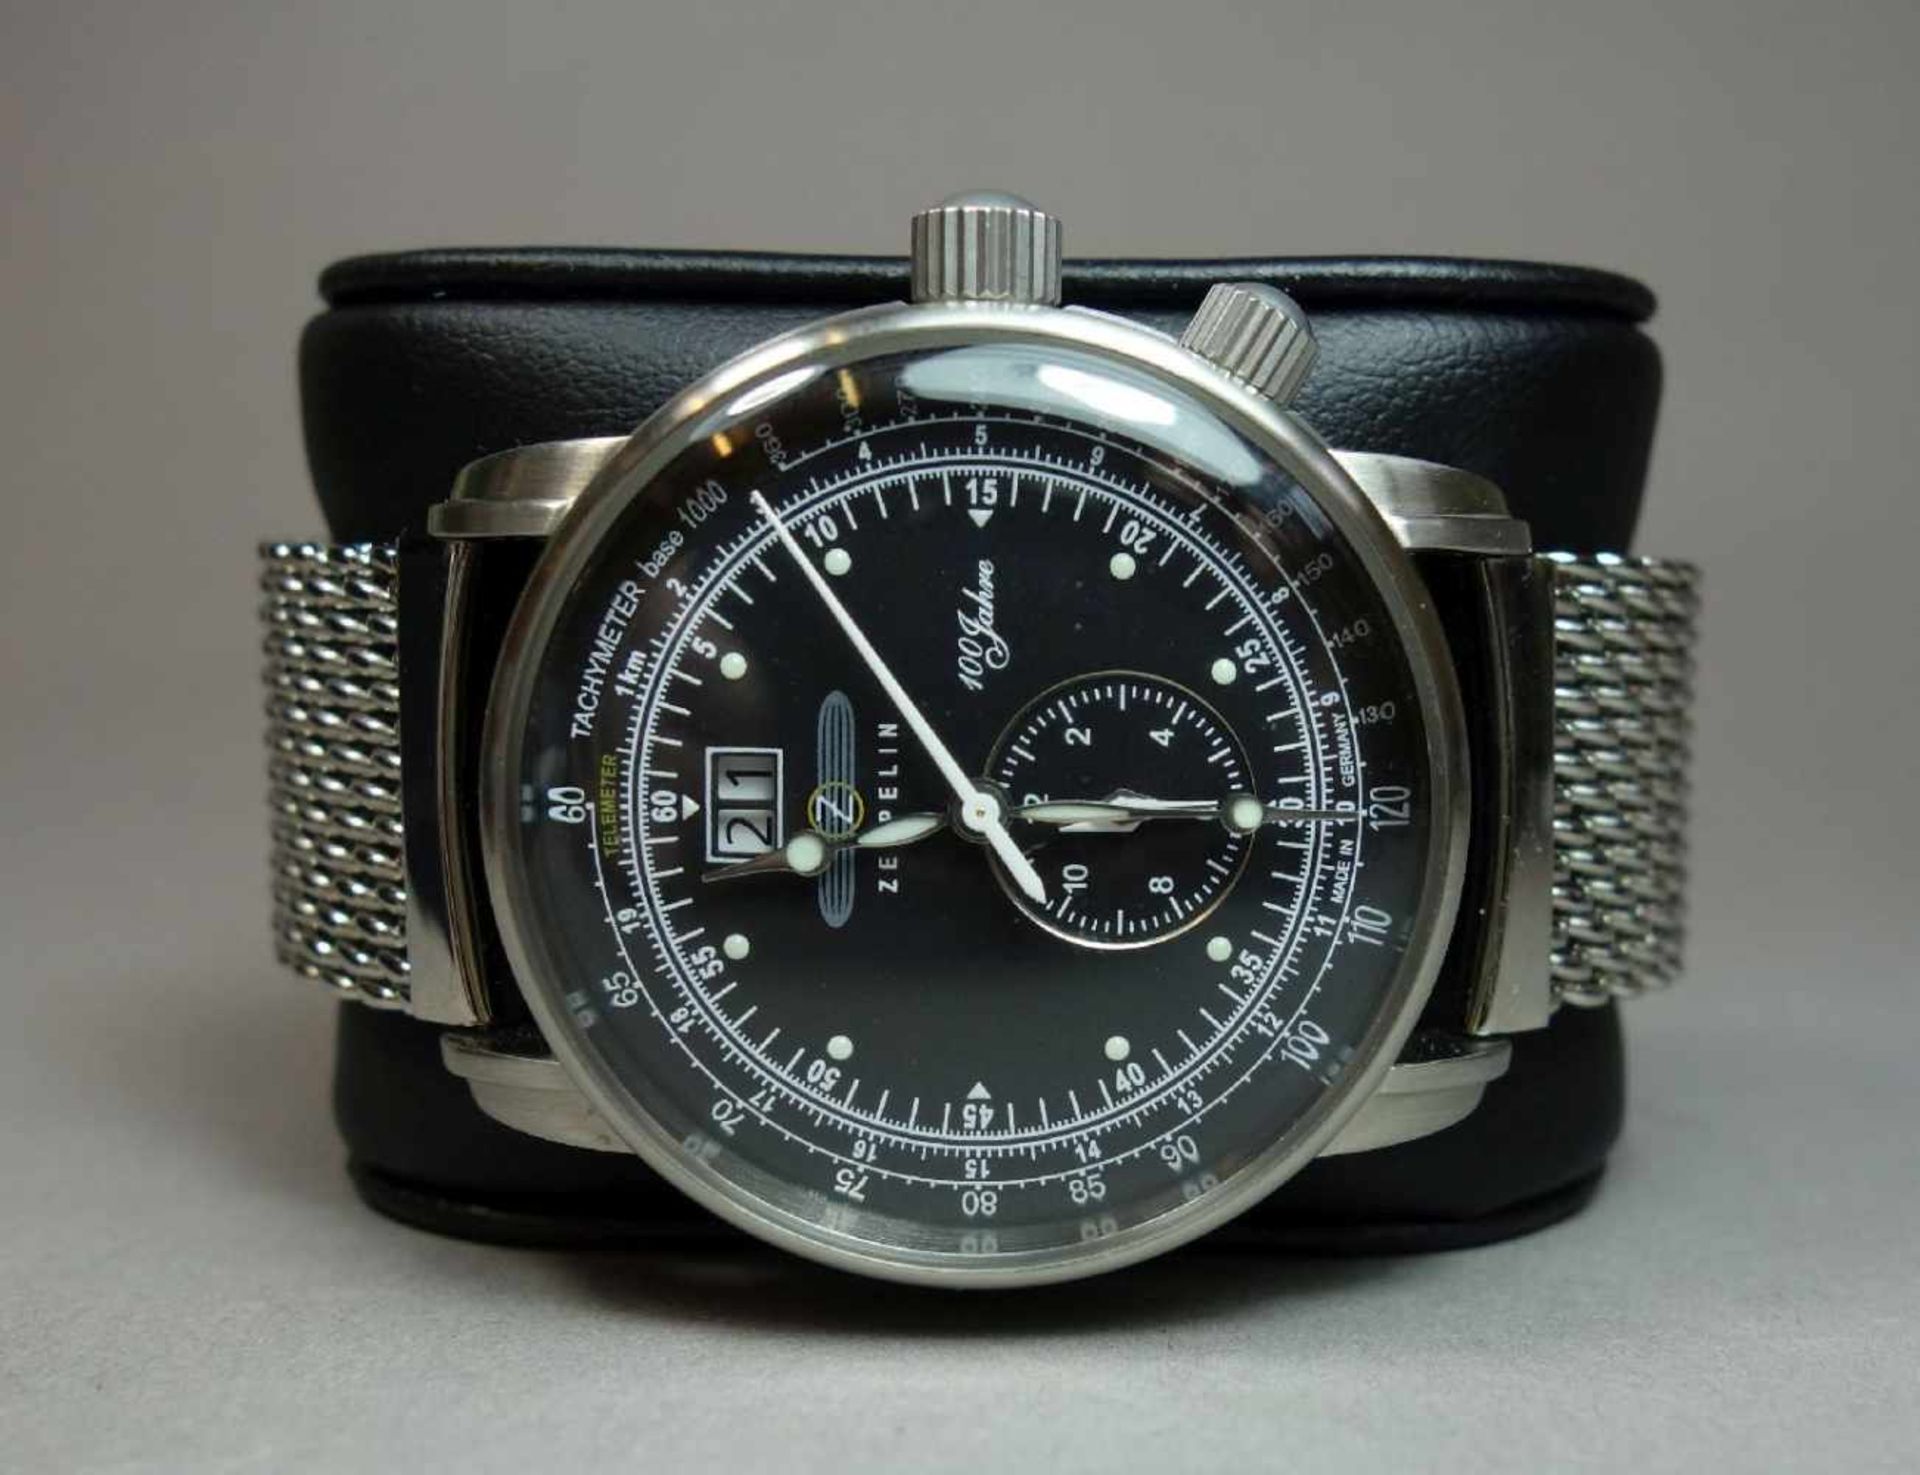 ARMBANDUHR ZEPPELIN 7640M-1 / wristwatch, Quartz-Uhr, Manufaktur Point tec Electronic GmbH /